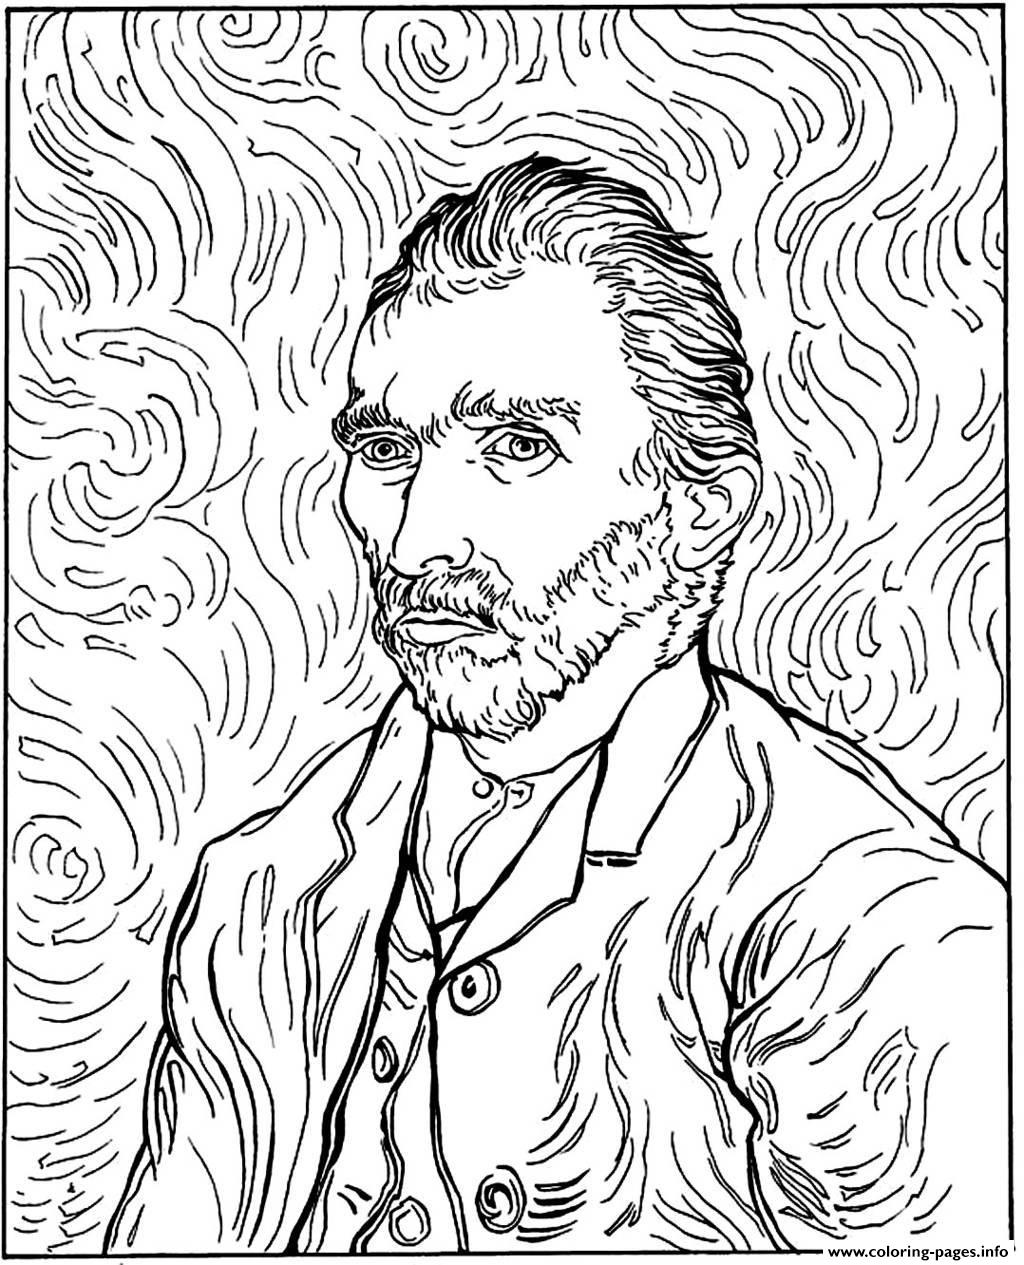 Adult Van Gogh Autoportrait Coloring Pages Printable